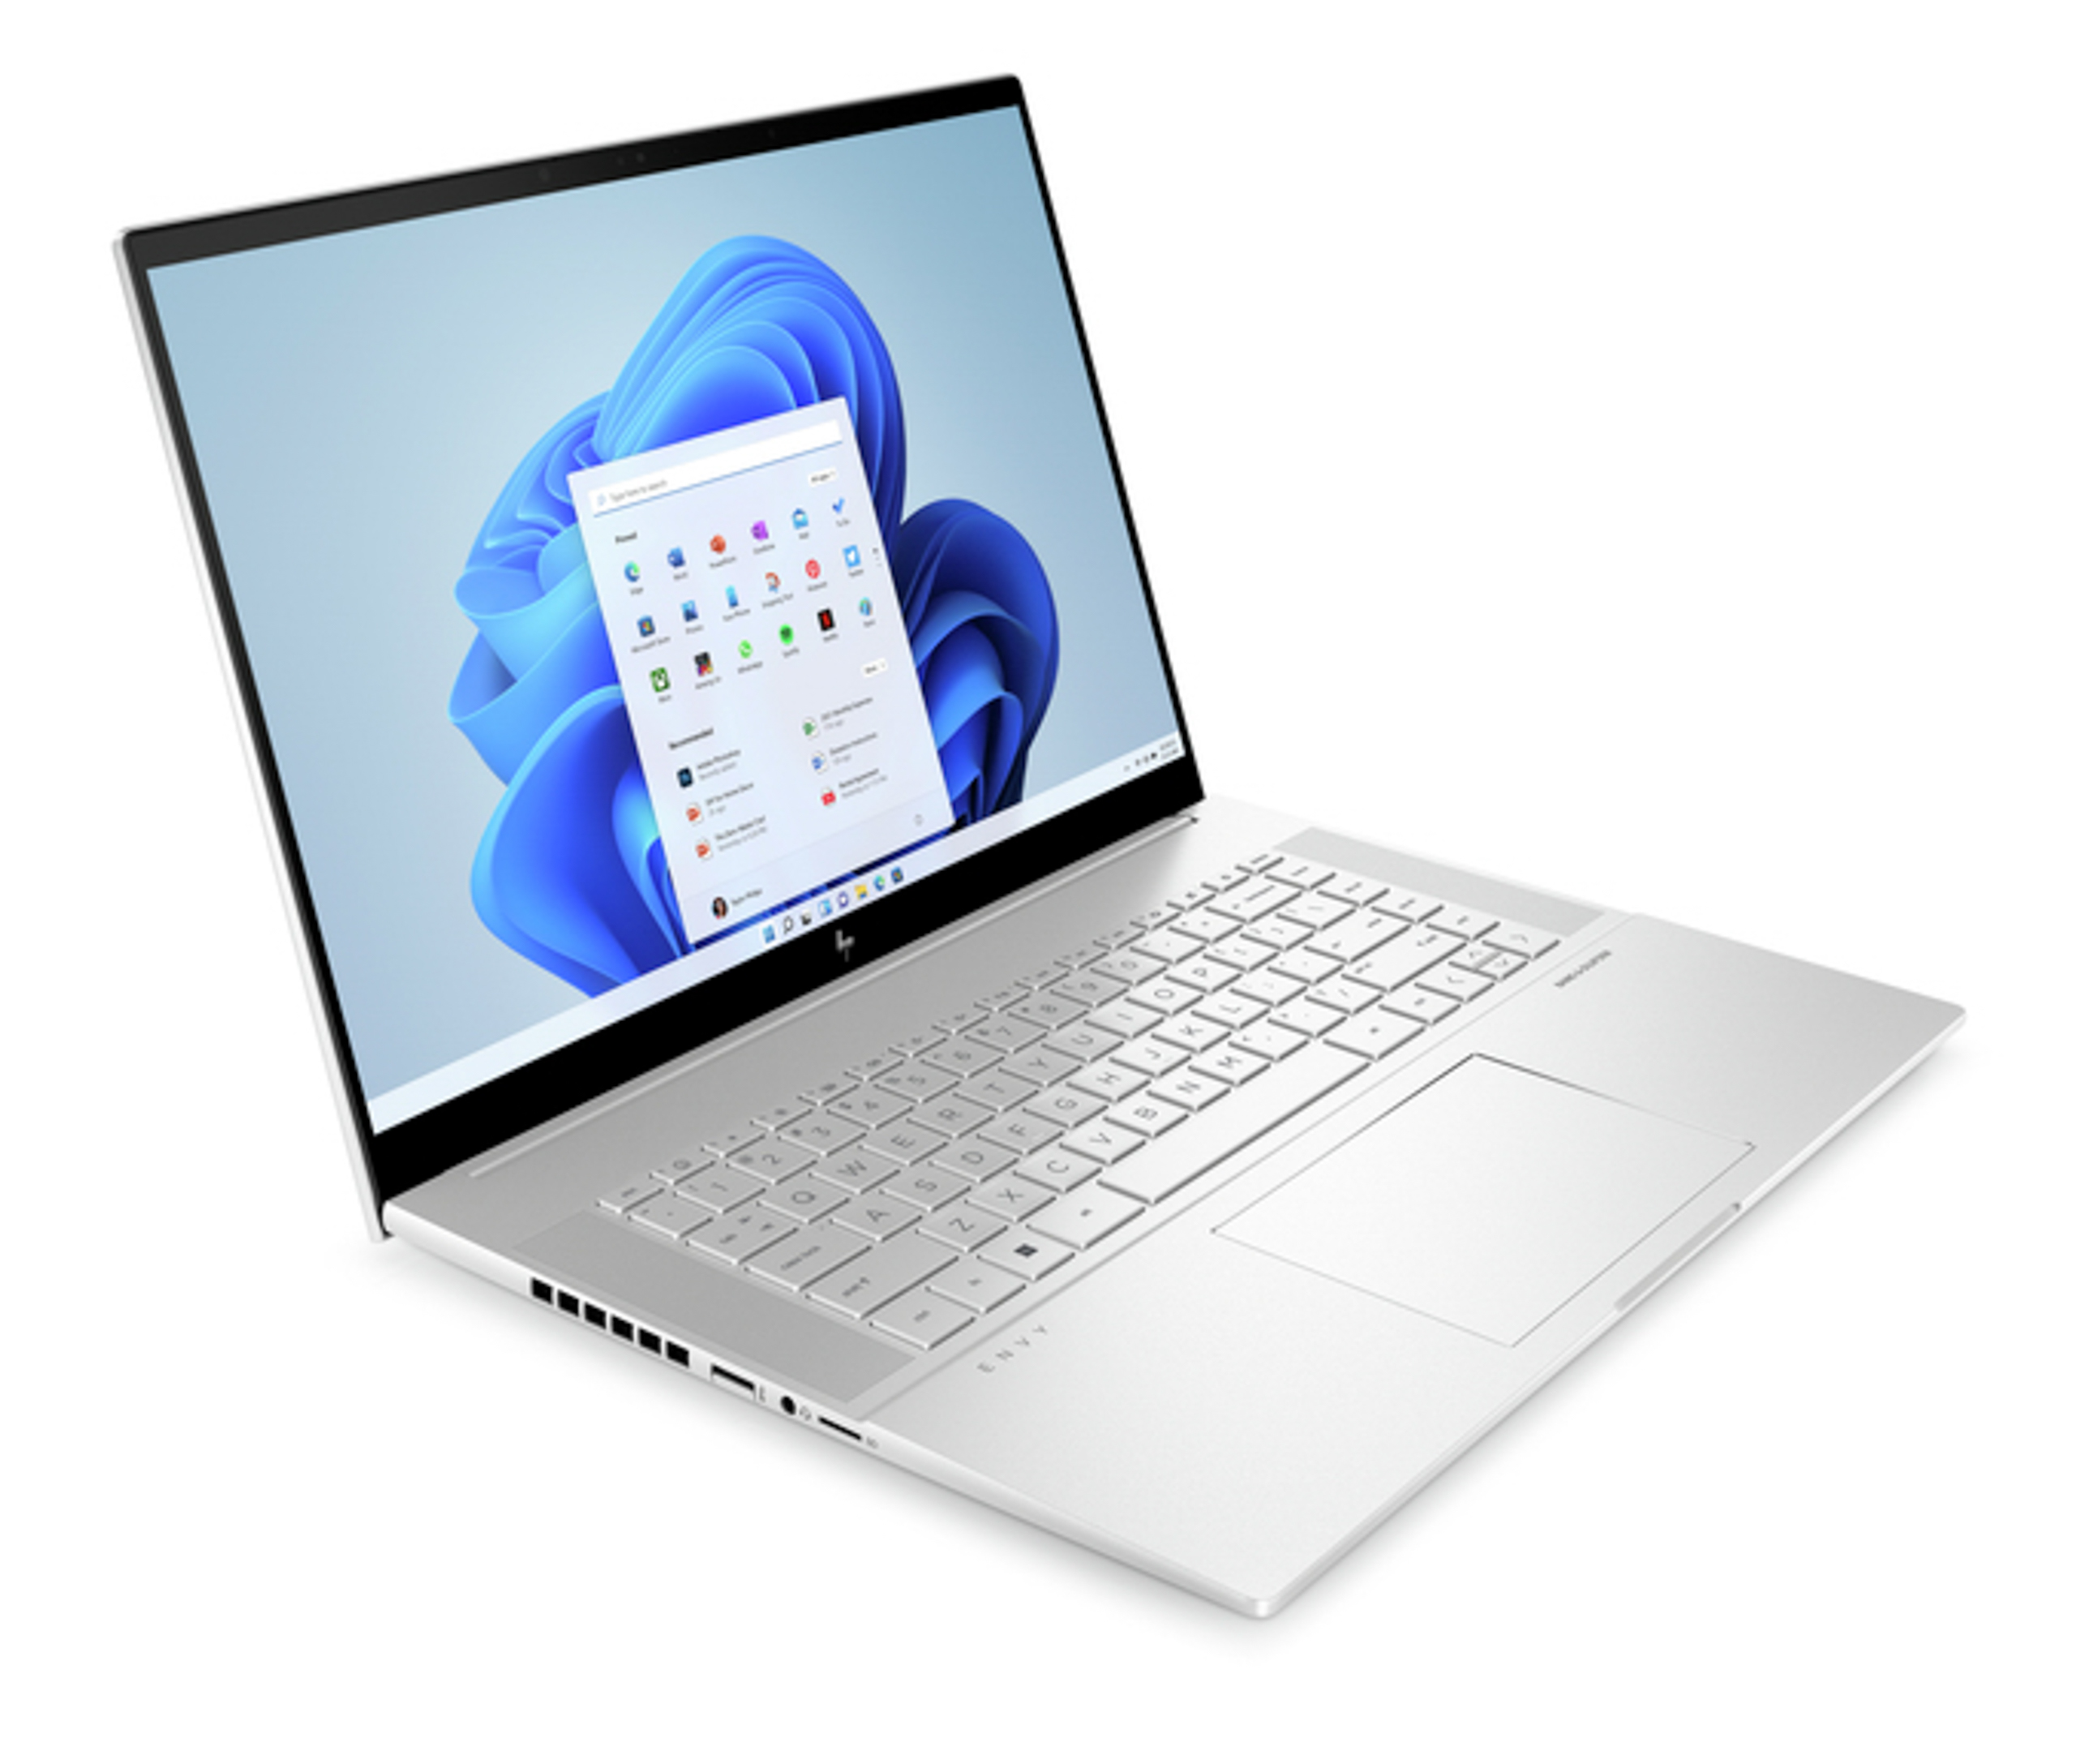 HP ra mắt HP Spectre và HP ENVY - Dòng laptop hỗ trợ các nhà sáng tạo nội dung trong kỷ nguyên mới